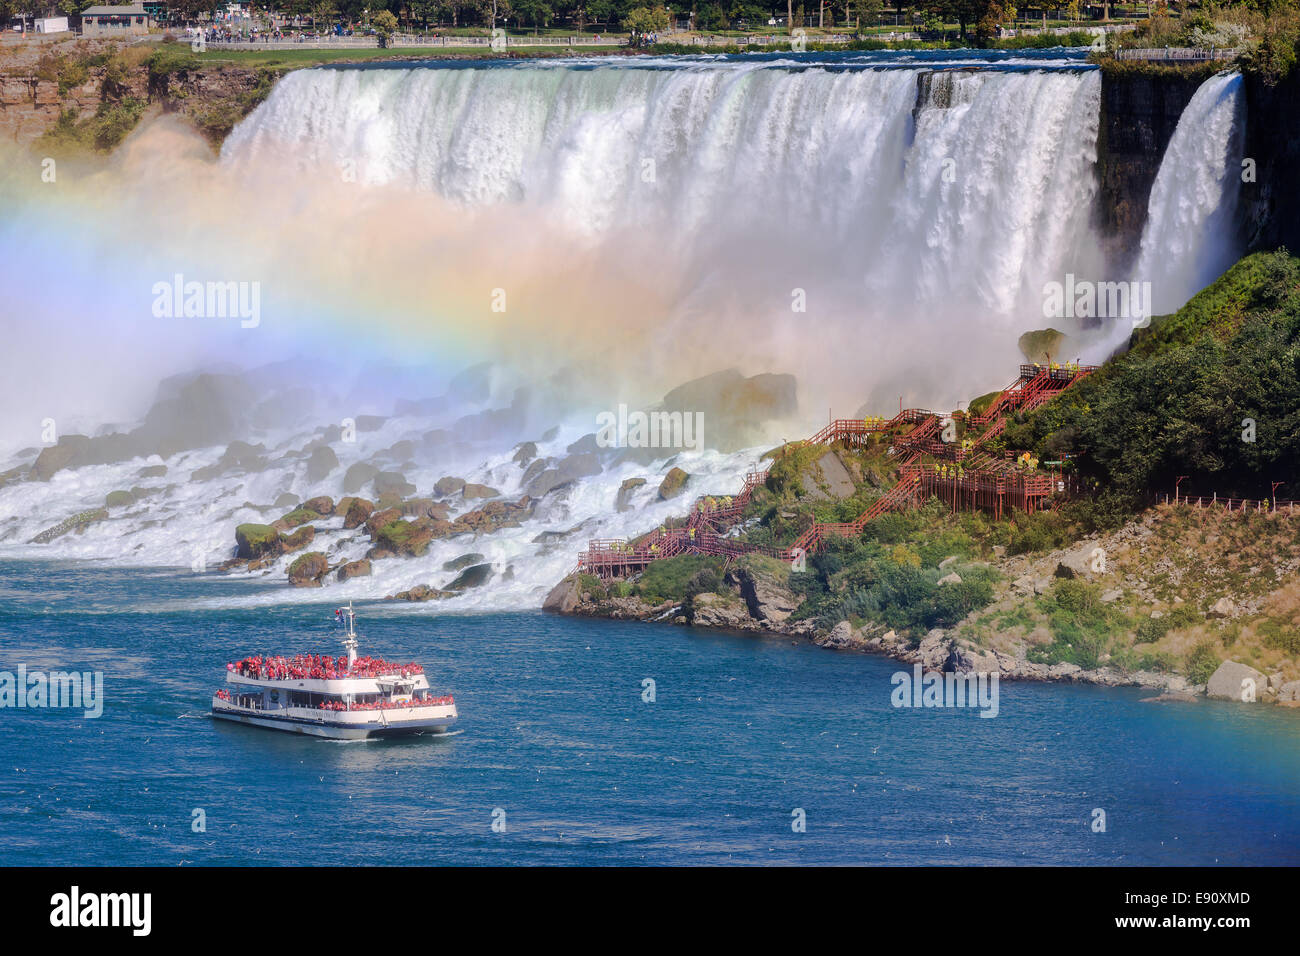 Le Hornblower chargé avec les touristes devant les chutes américaines, une partie de la région de Niagara Falls, Ontario, Canada. Banque D'Images